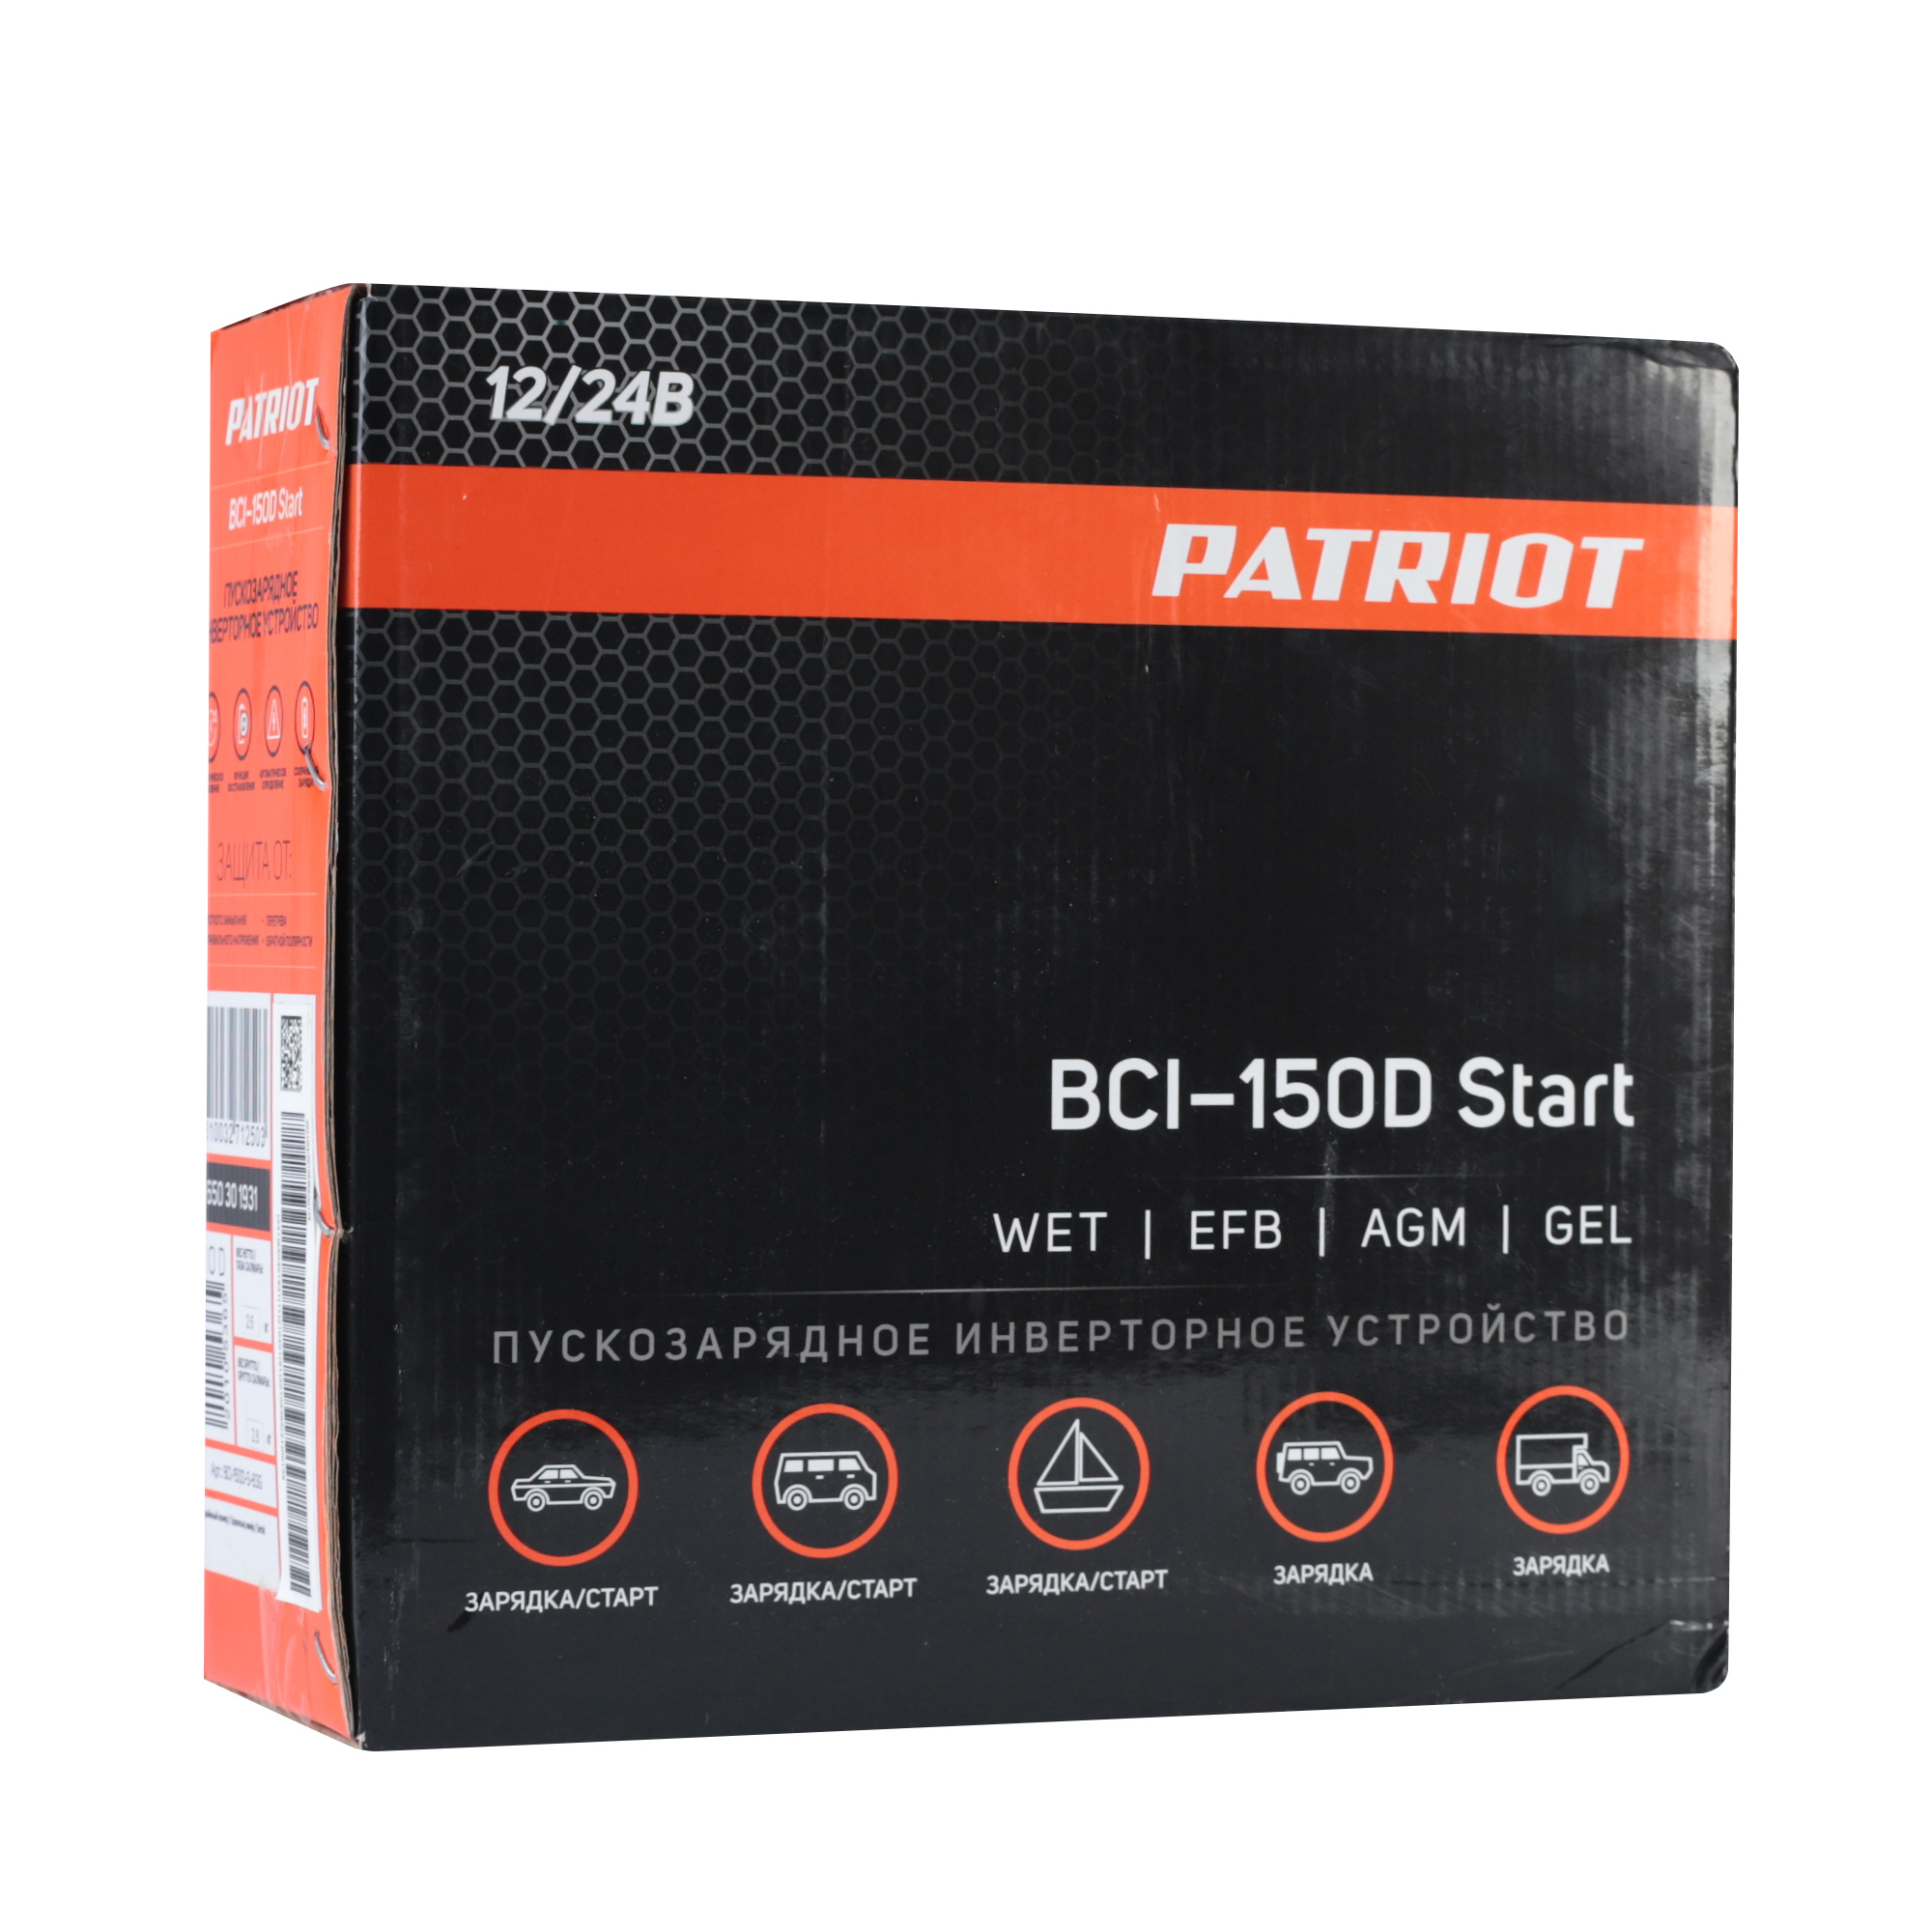 Пускозарядное инверторное устройство PATRIOT BCI 150D Start